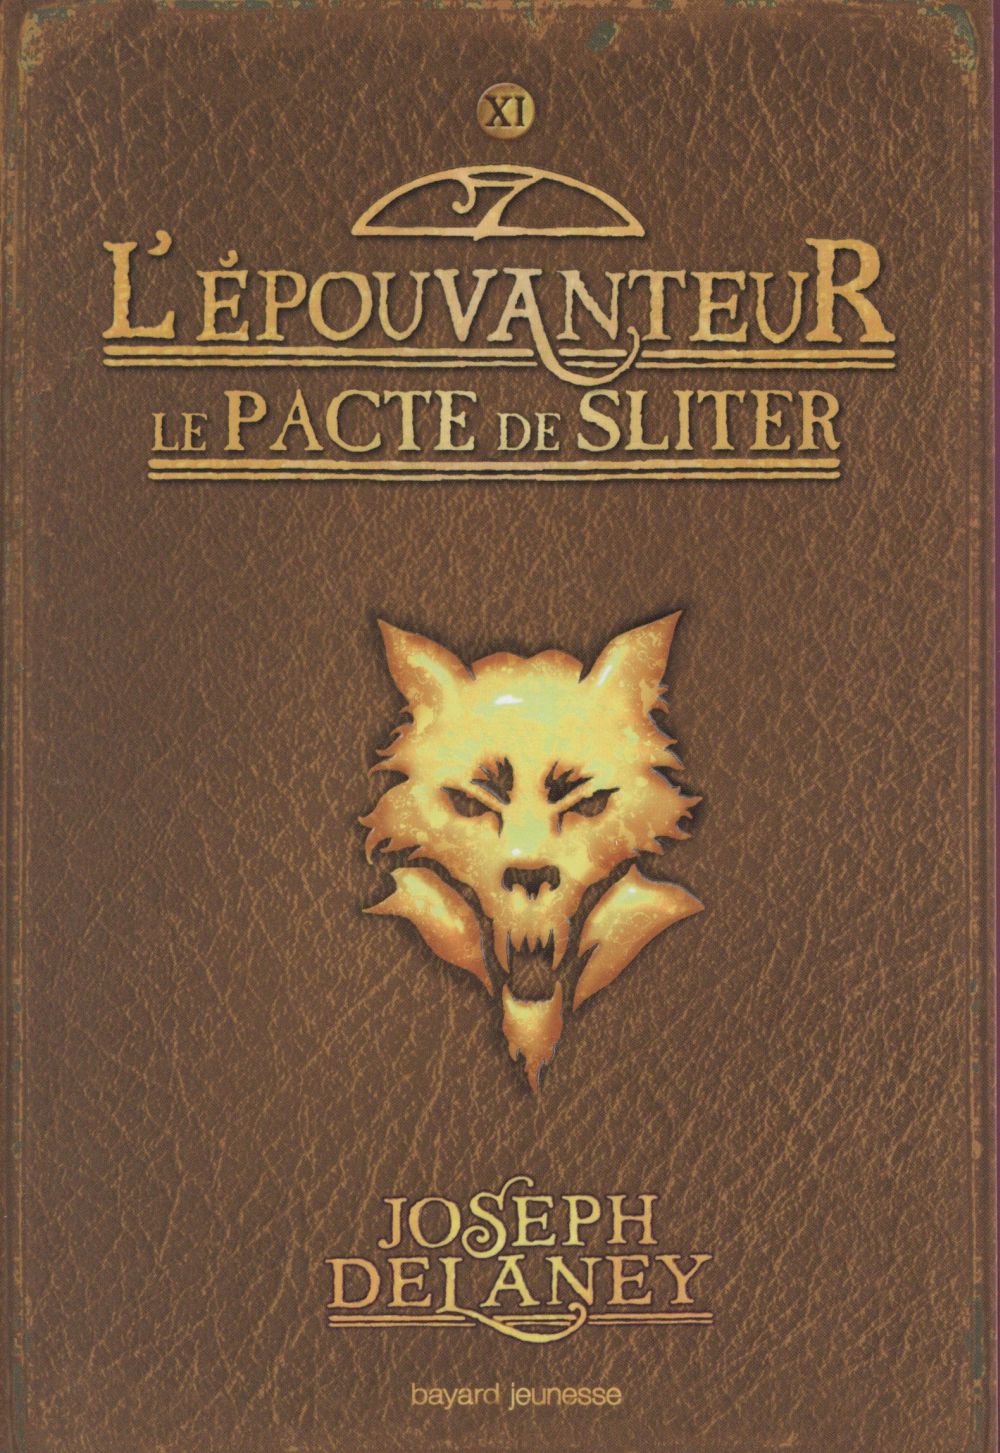 L'EPOUVANTEUR, TOME 11 - LE PACTE DE SLITER